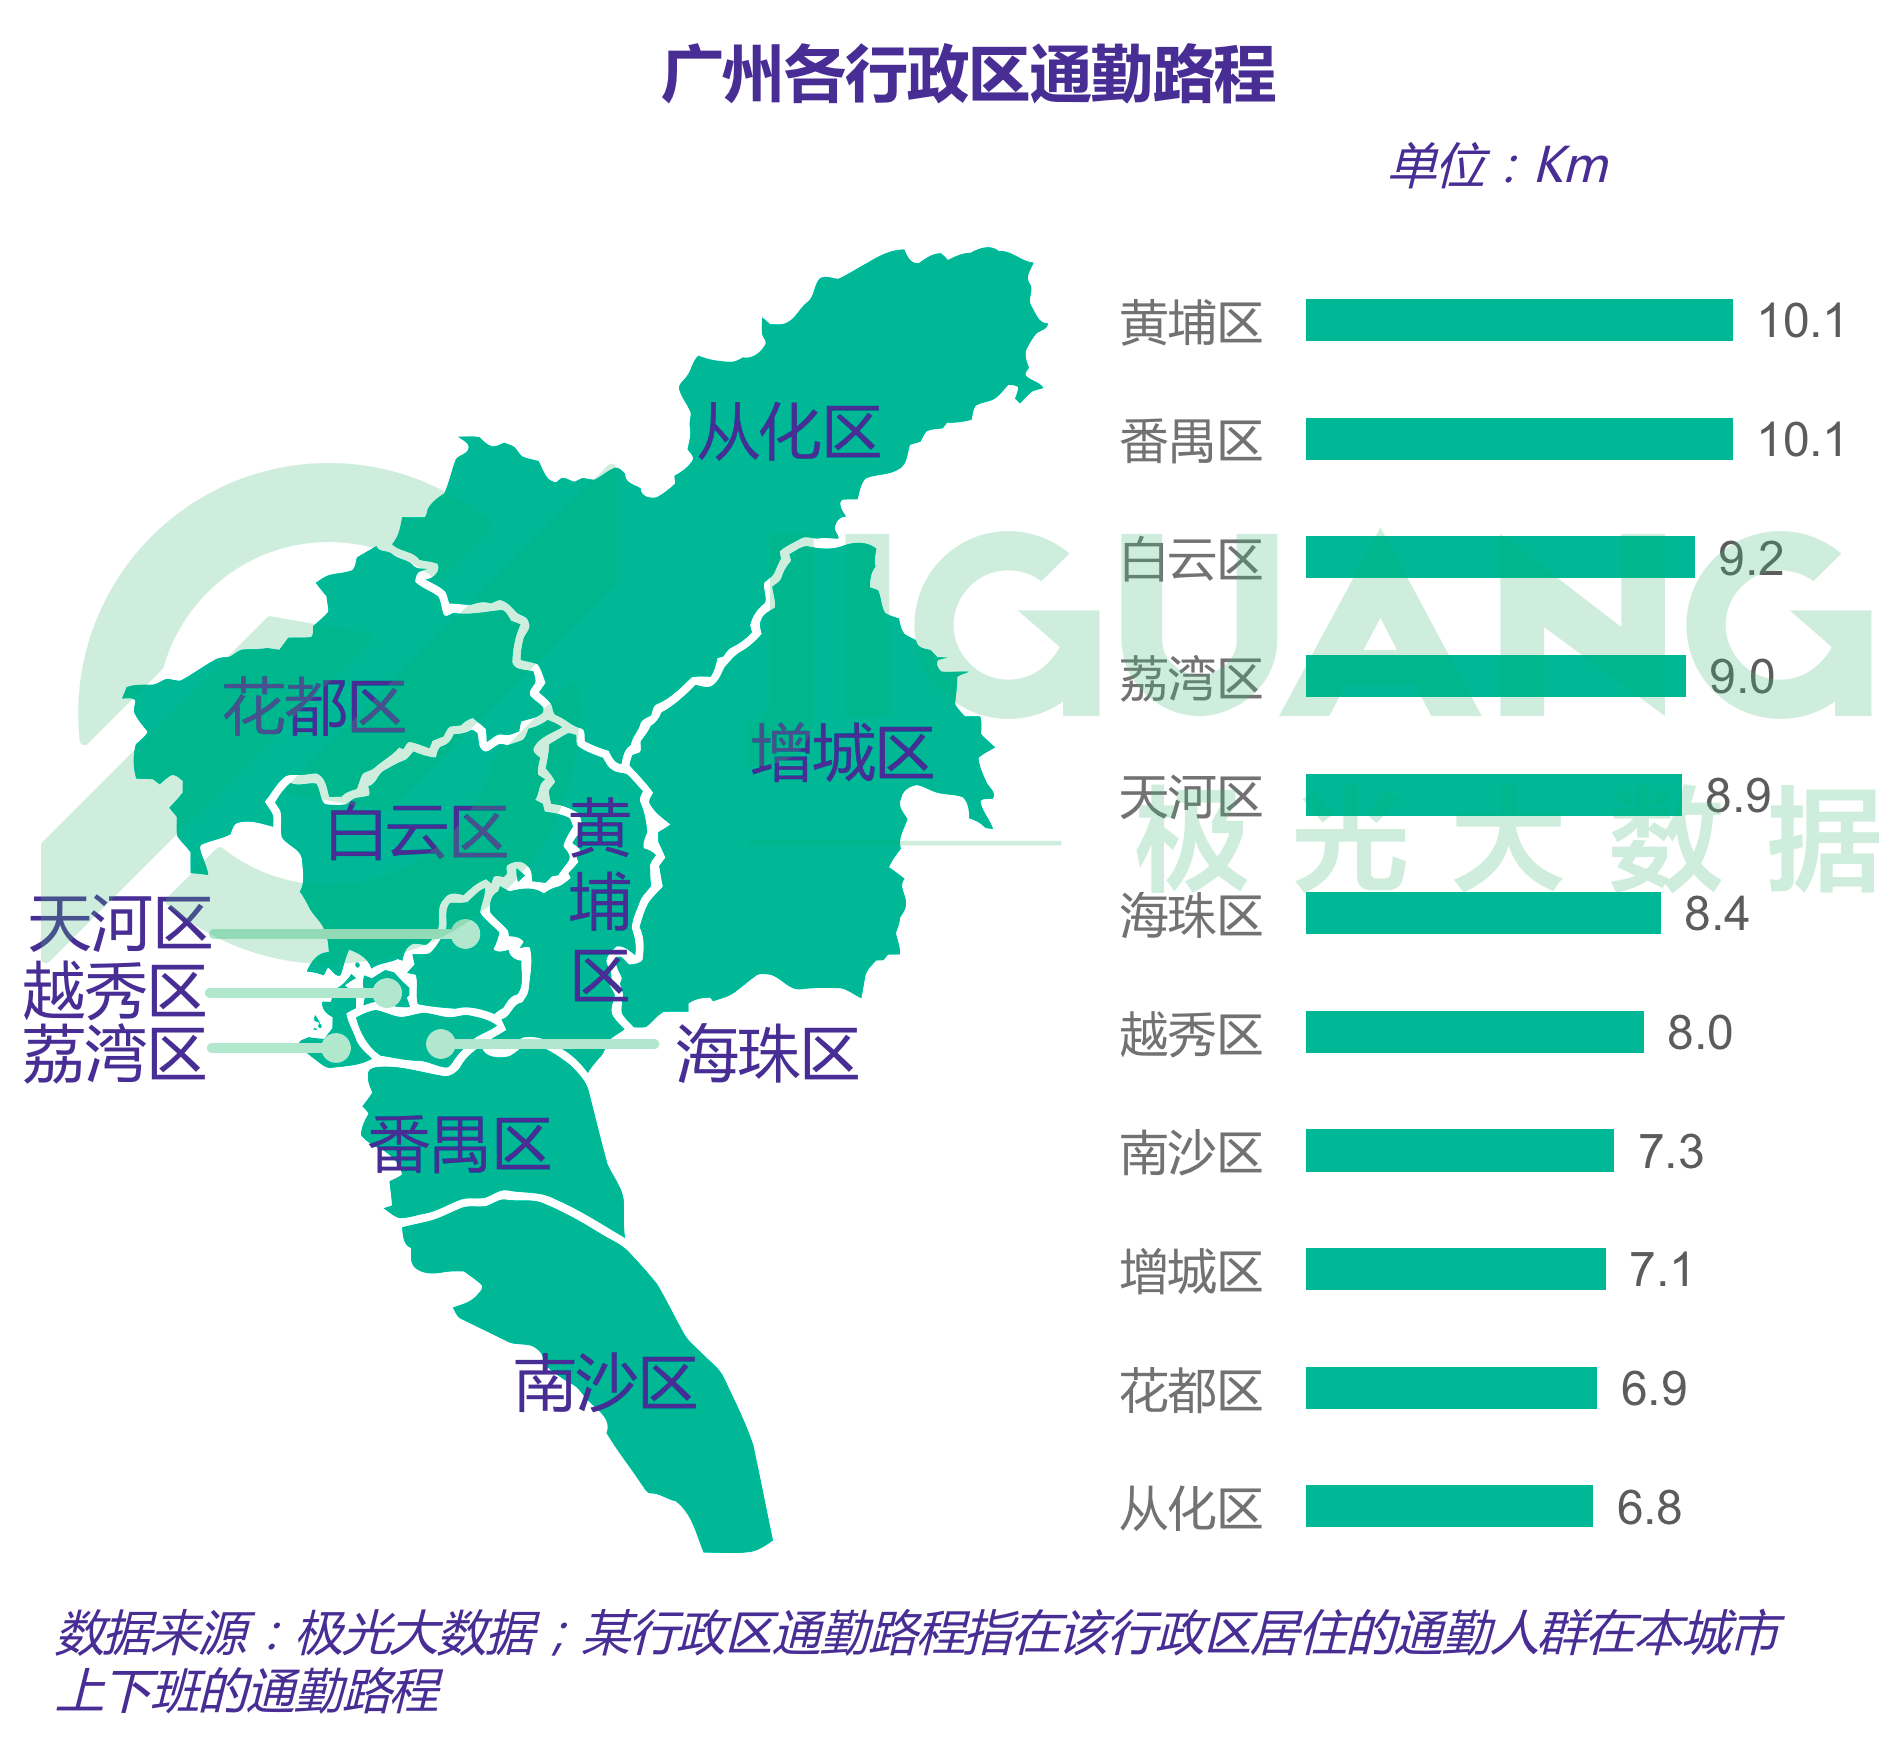 广州各行政区通勤路程比较中,黄埔区和番禺区的通勤路程均为10